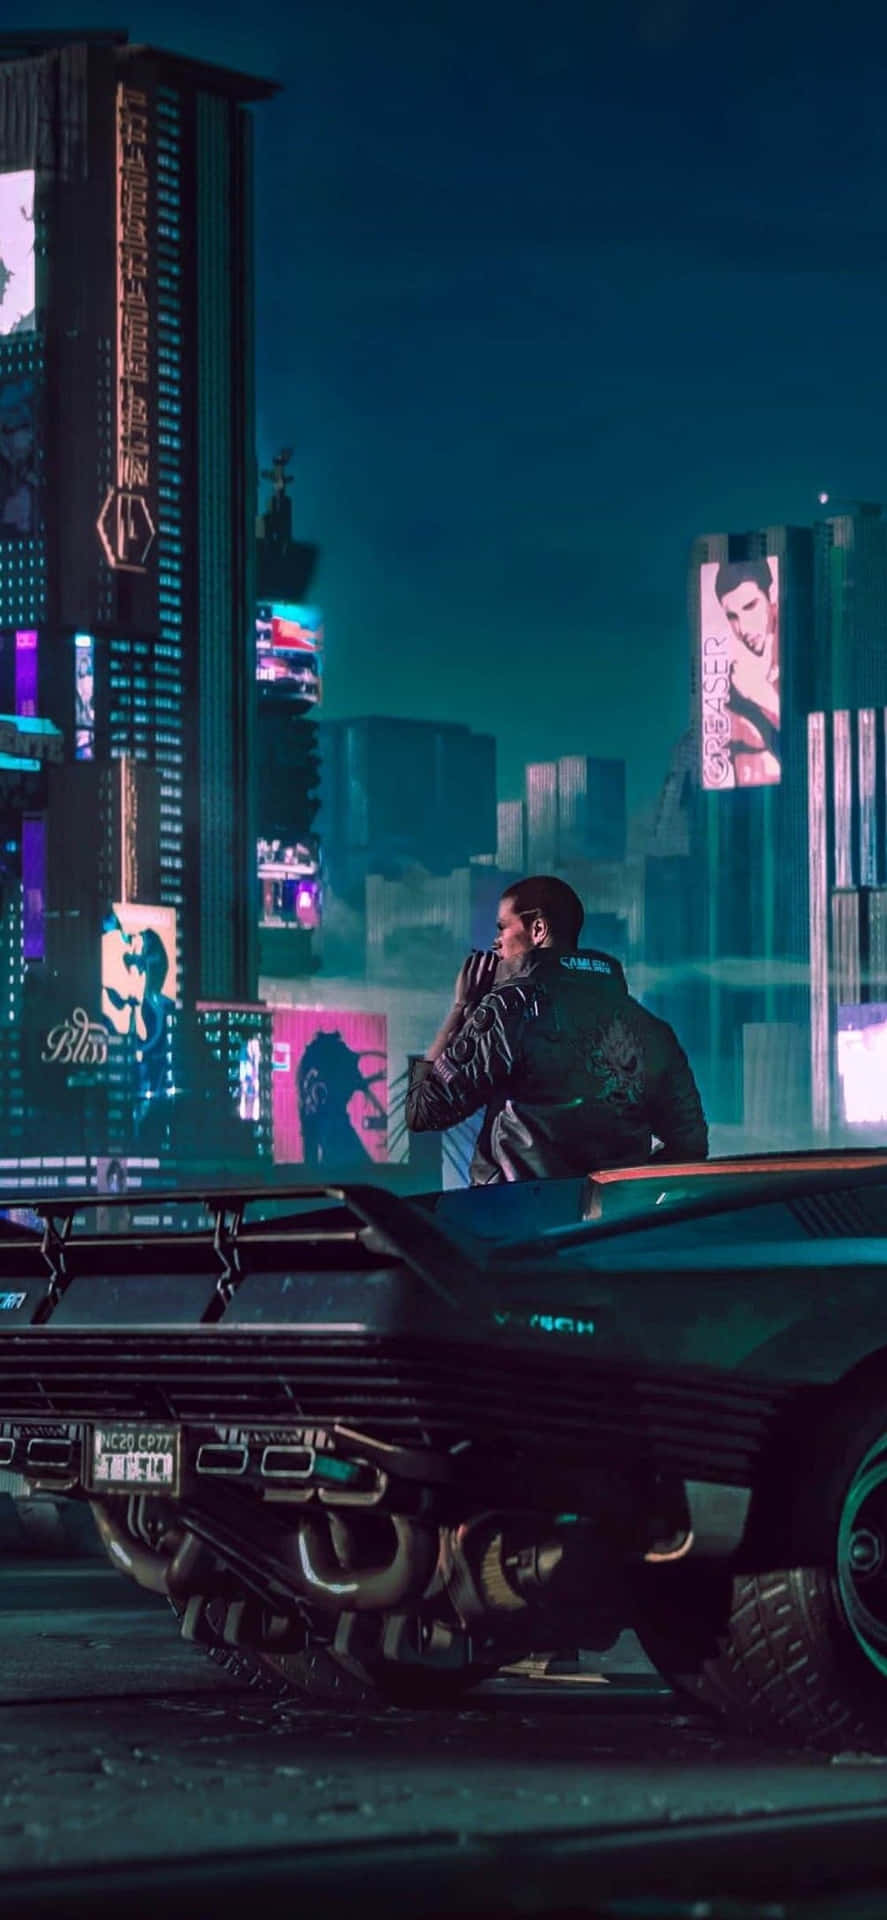 Futuristischescyberpunk 2077-theme-hintergrundbild Für Das Google Pixel 3xl.